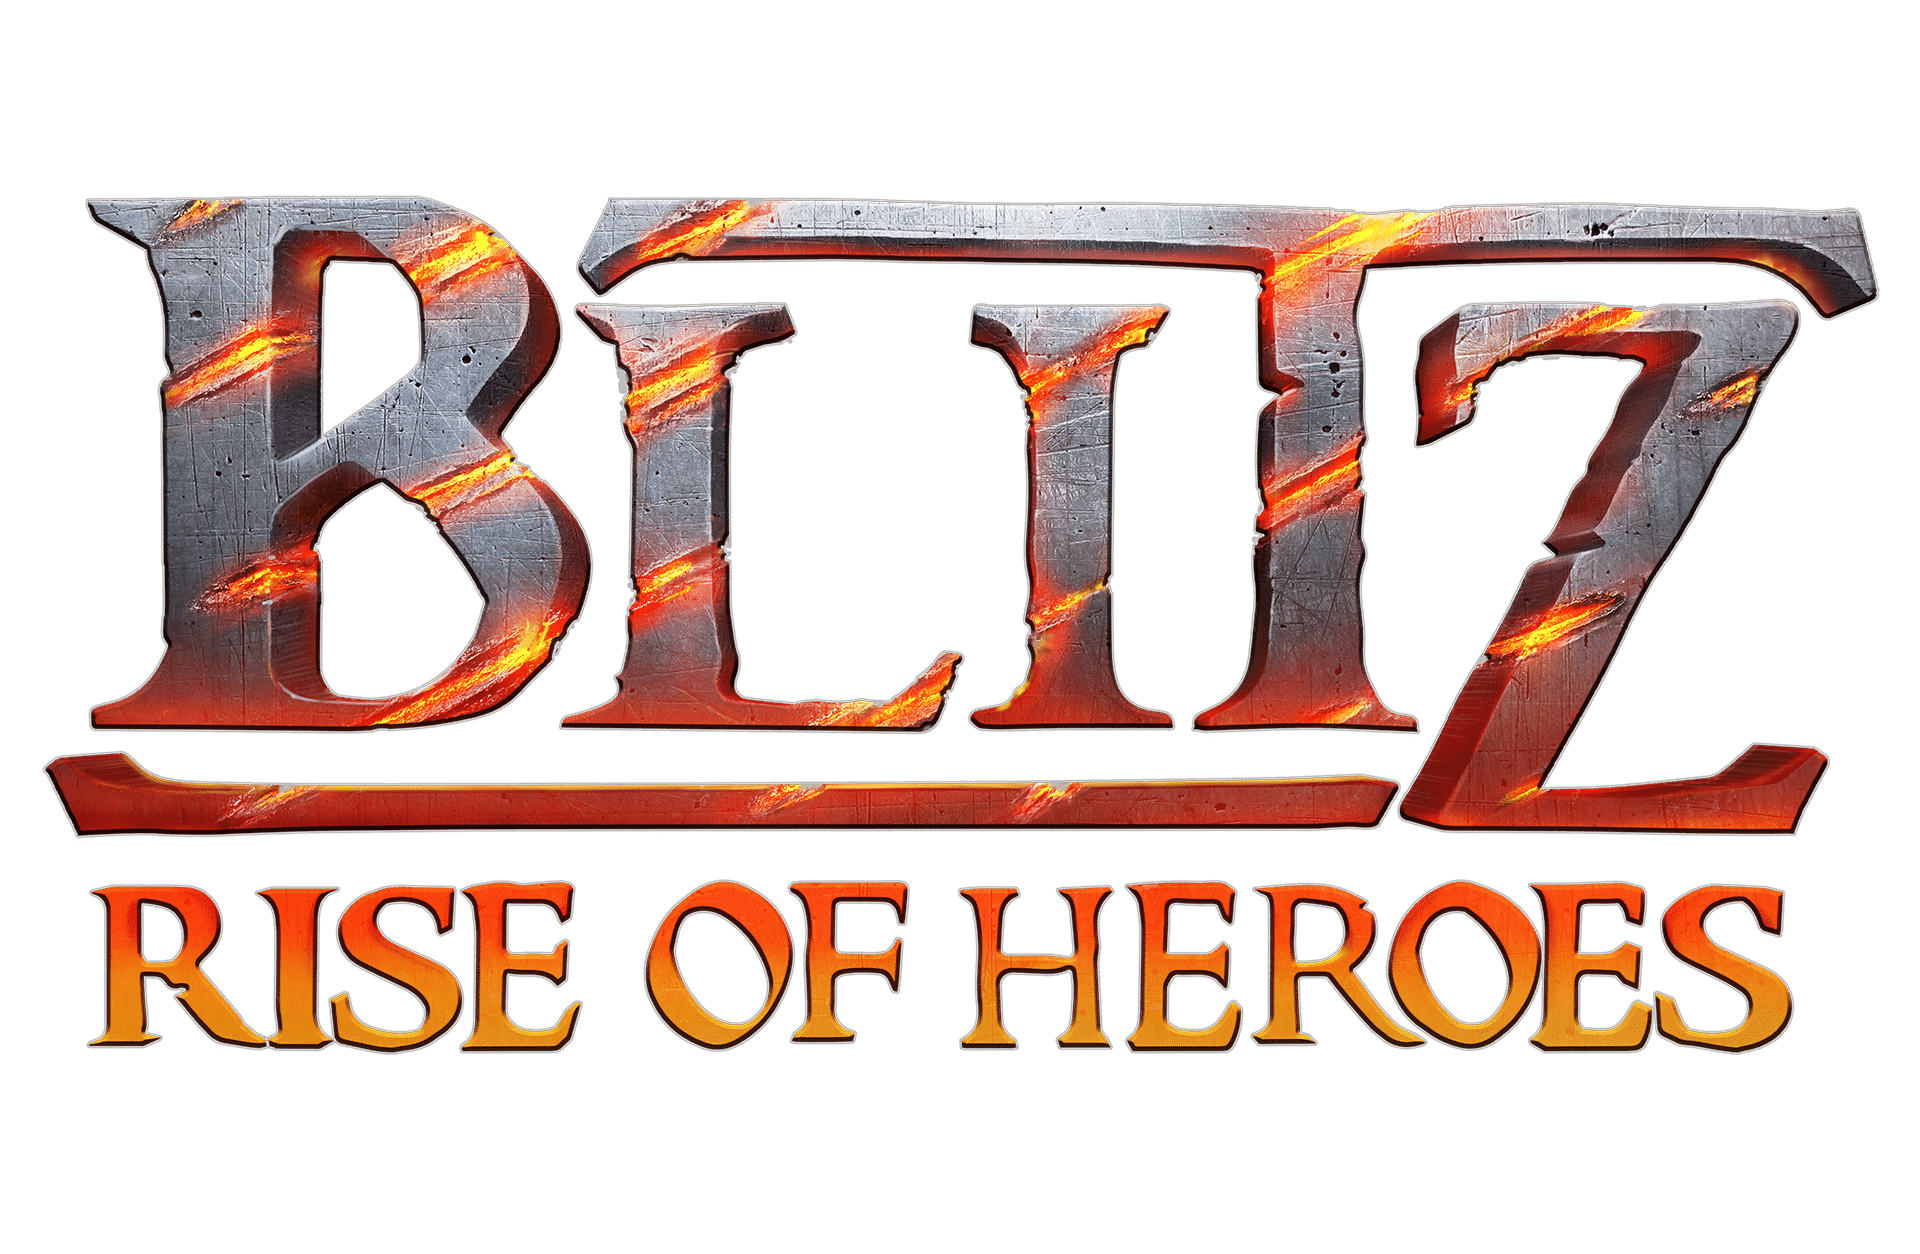 BlitZ: L'Ascesa degli eroi